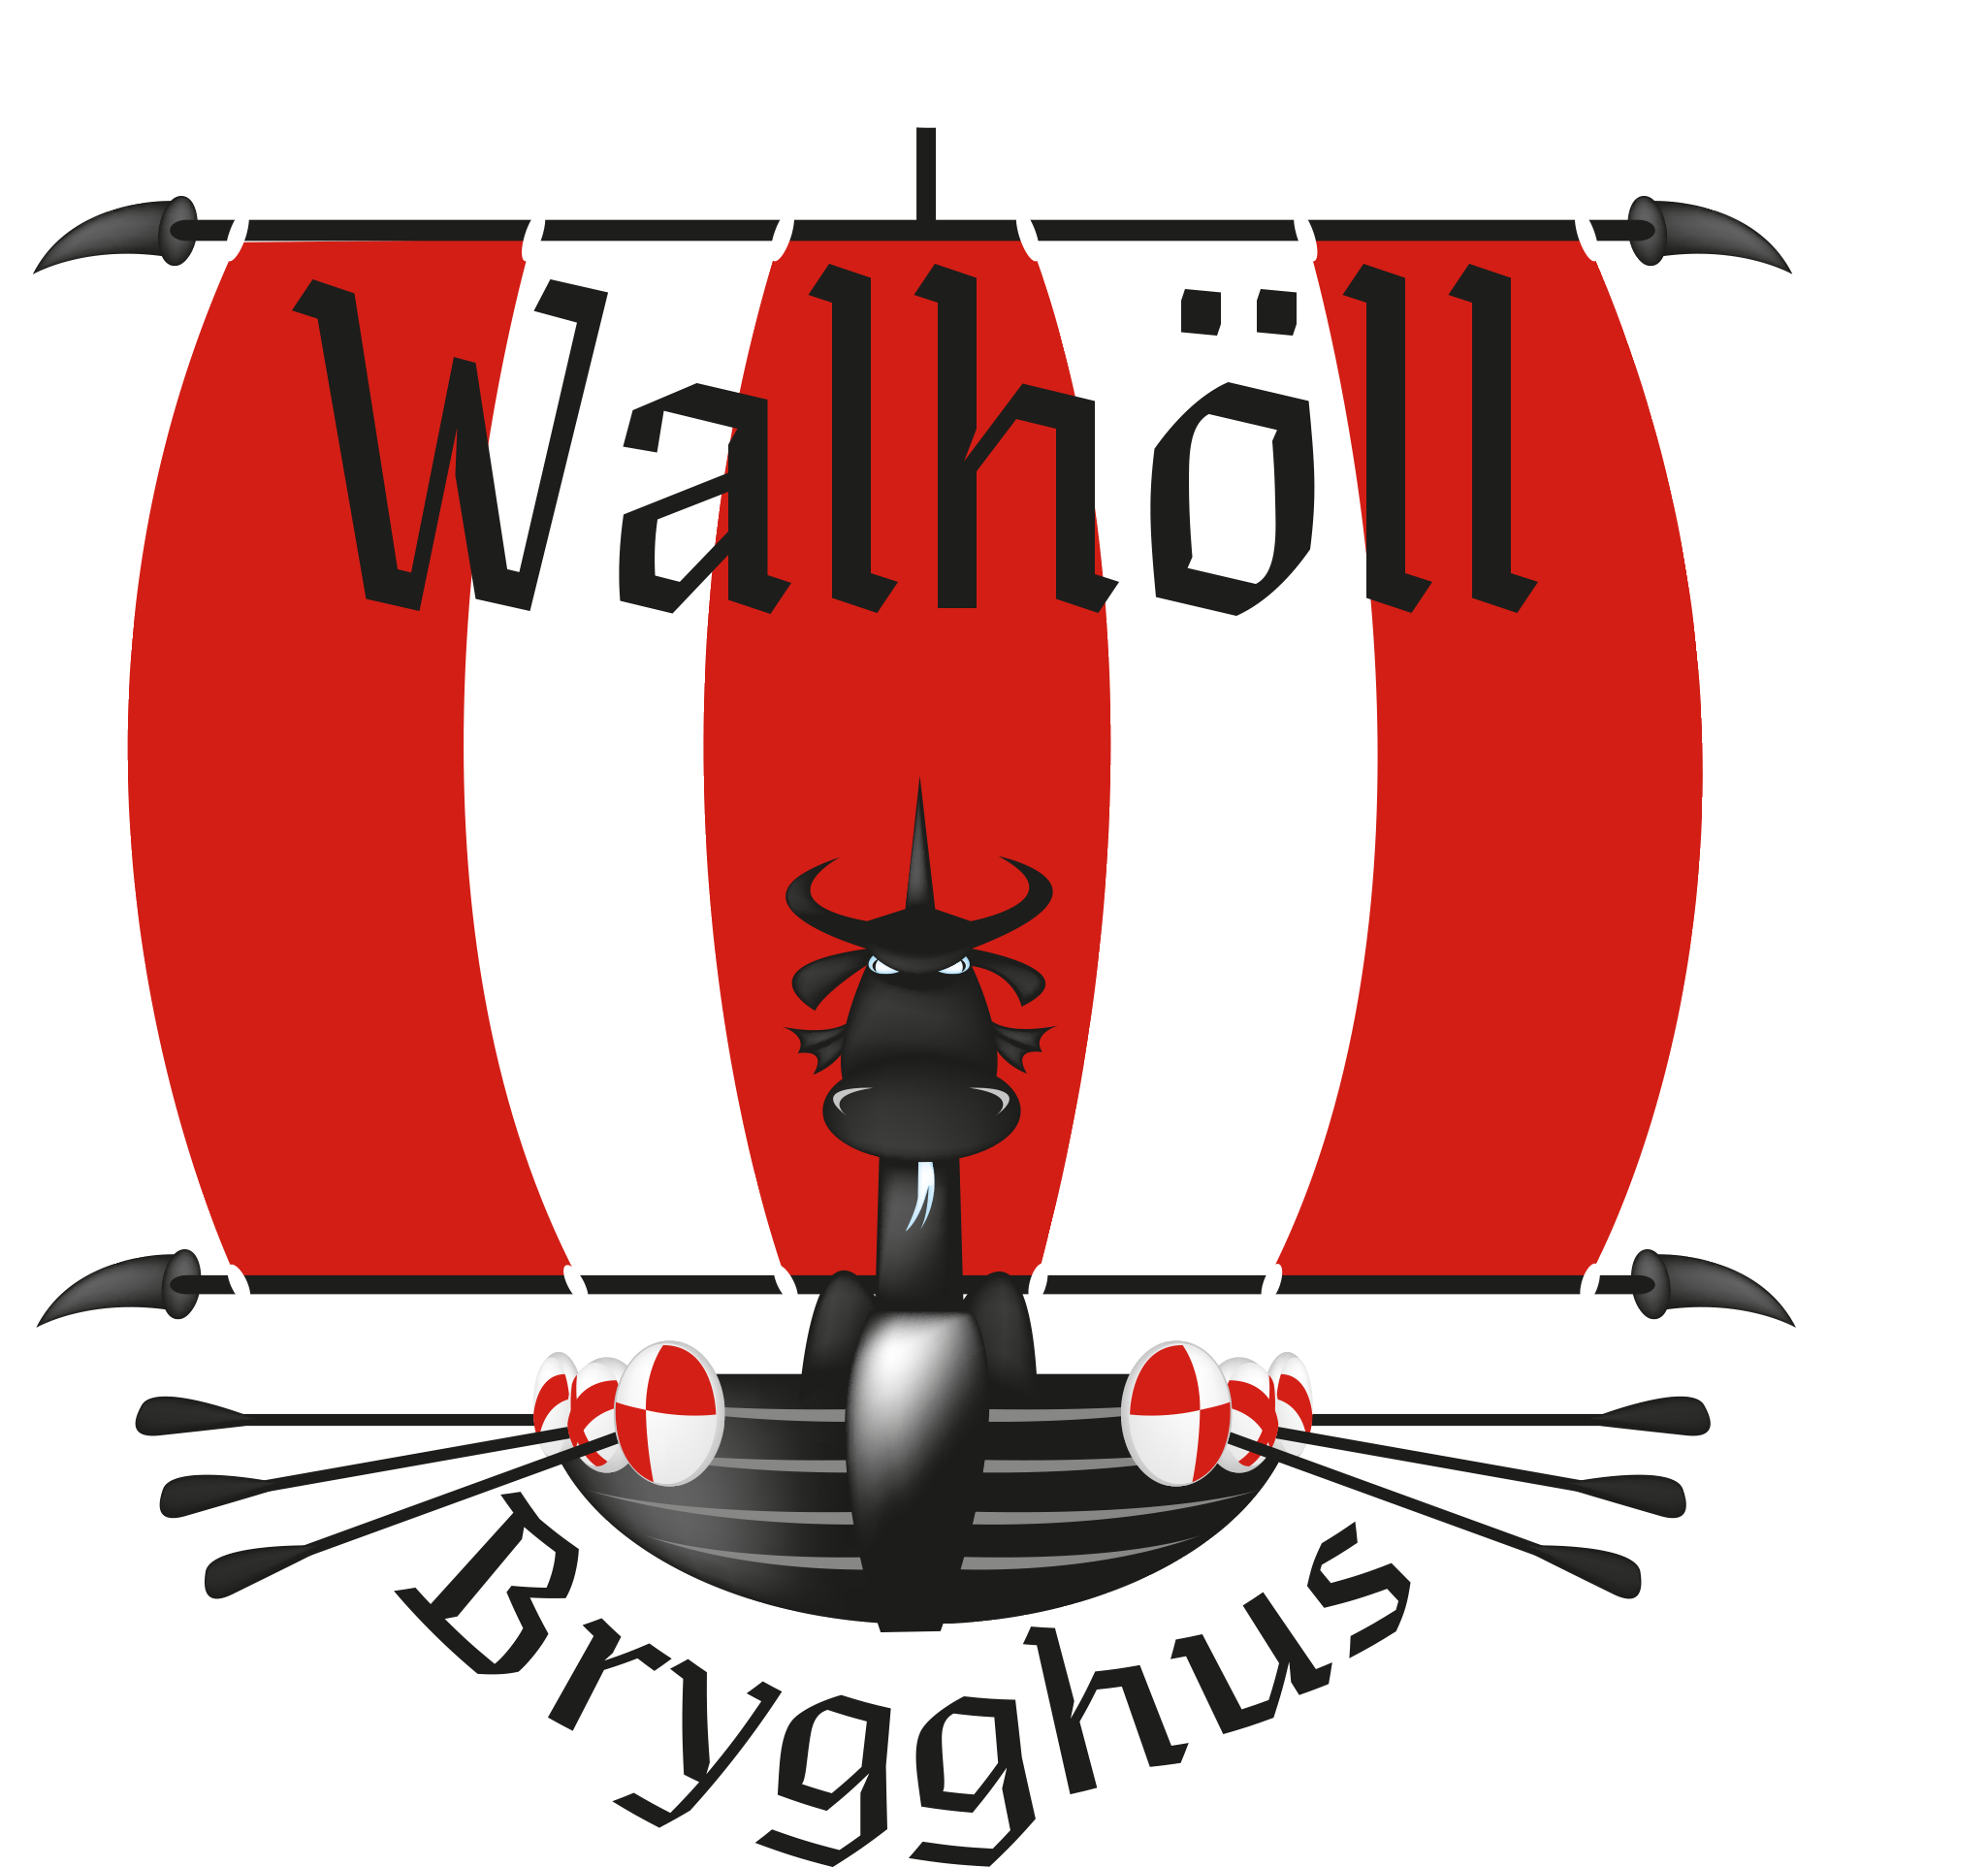 Walhöll